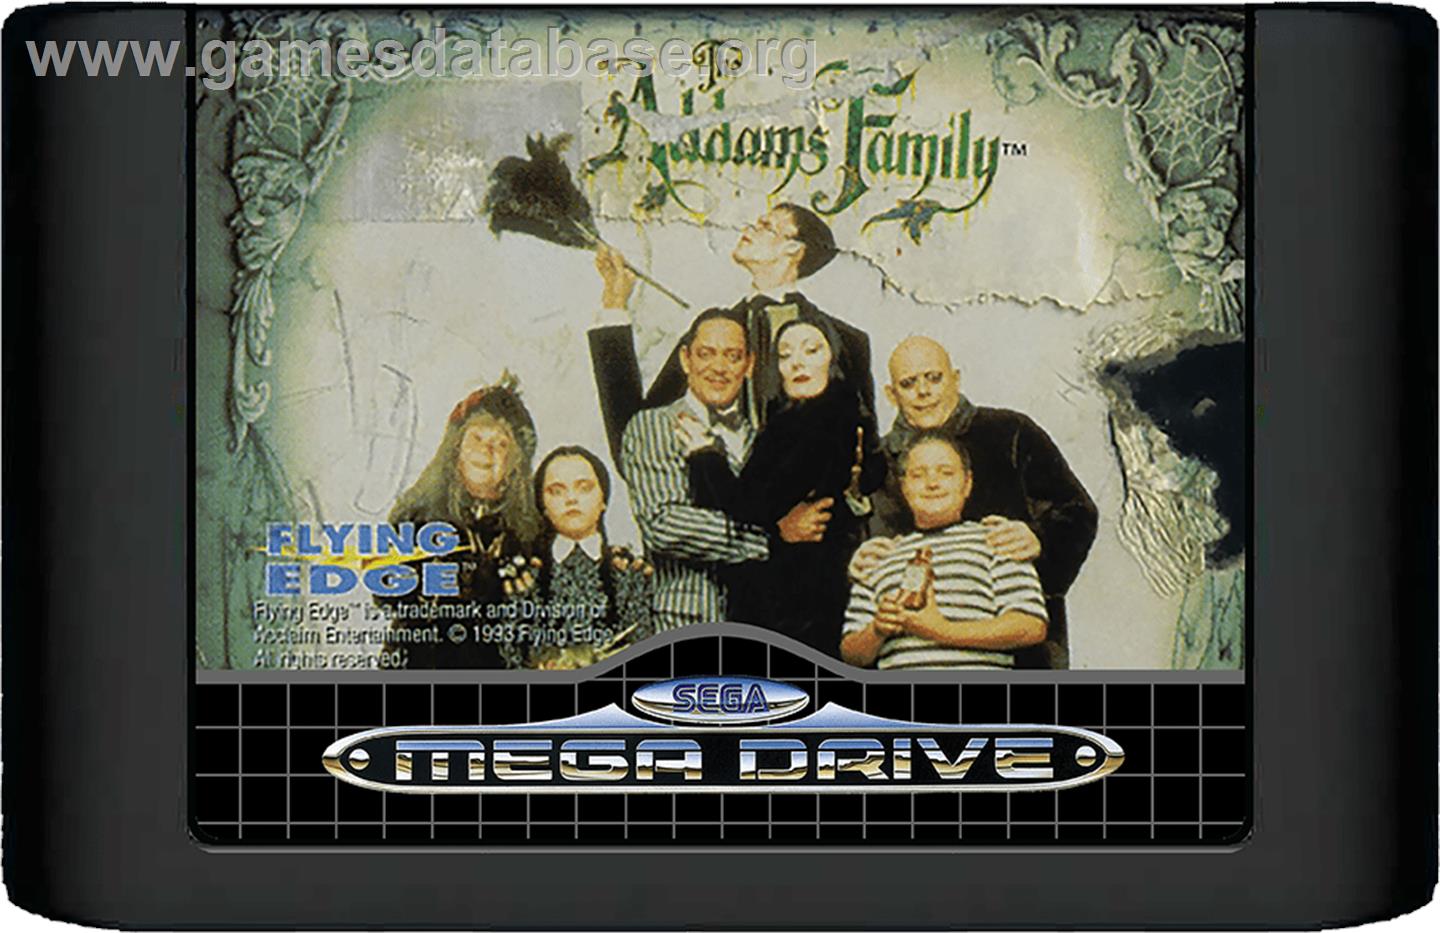 Addams Family, The - Sega Genesis - Artwork - Cartridge